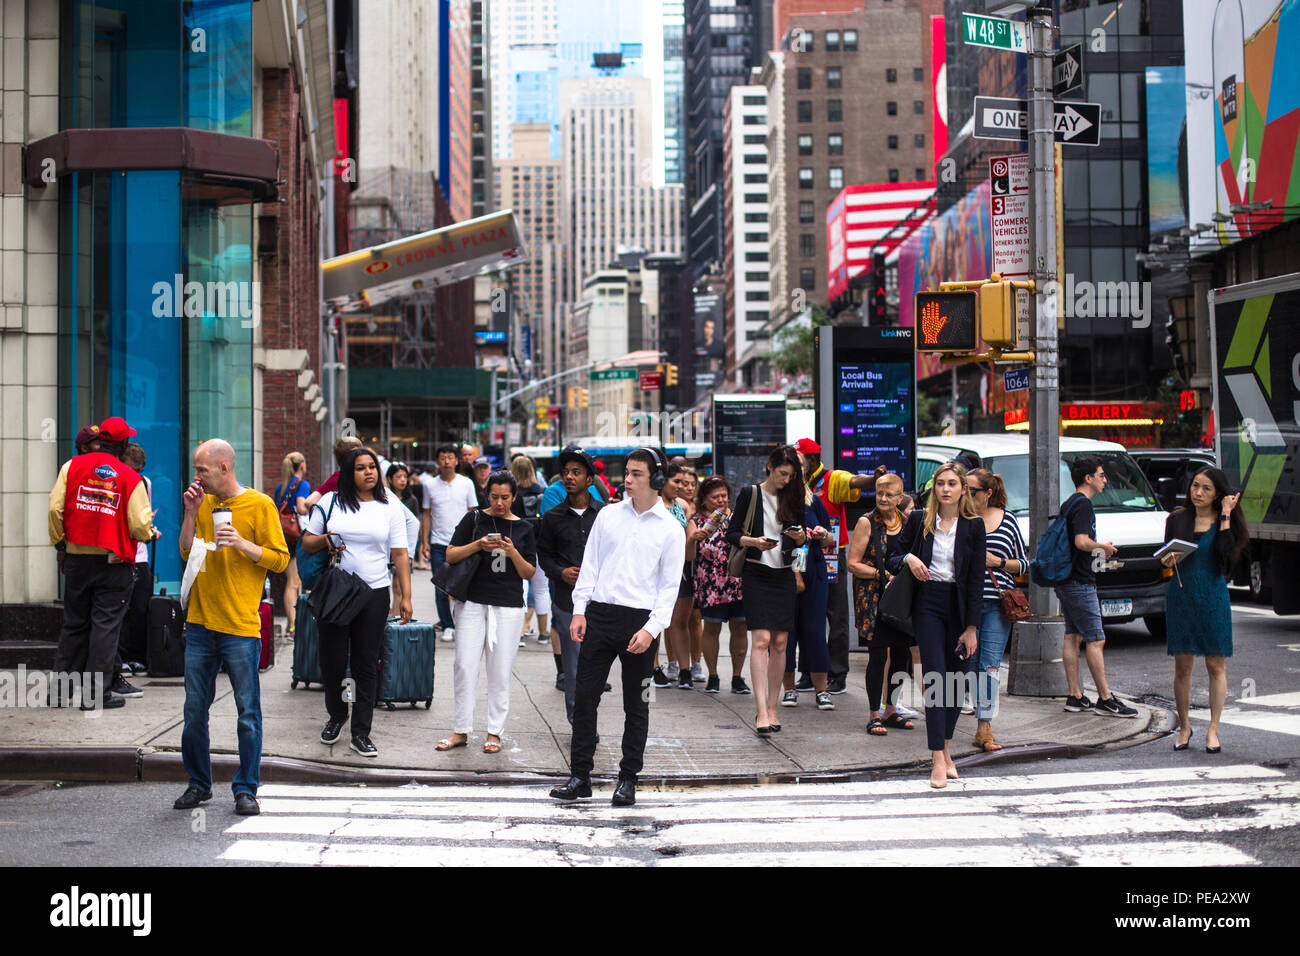 NEW YORK CITY - 26 juillet 2018 : trottoir occupé à Times Square à Manhattan encombrée de beaucoup de gens à pied et des panneaux publicitaires. Banque D'Images